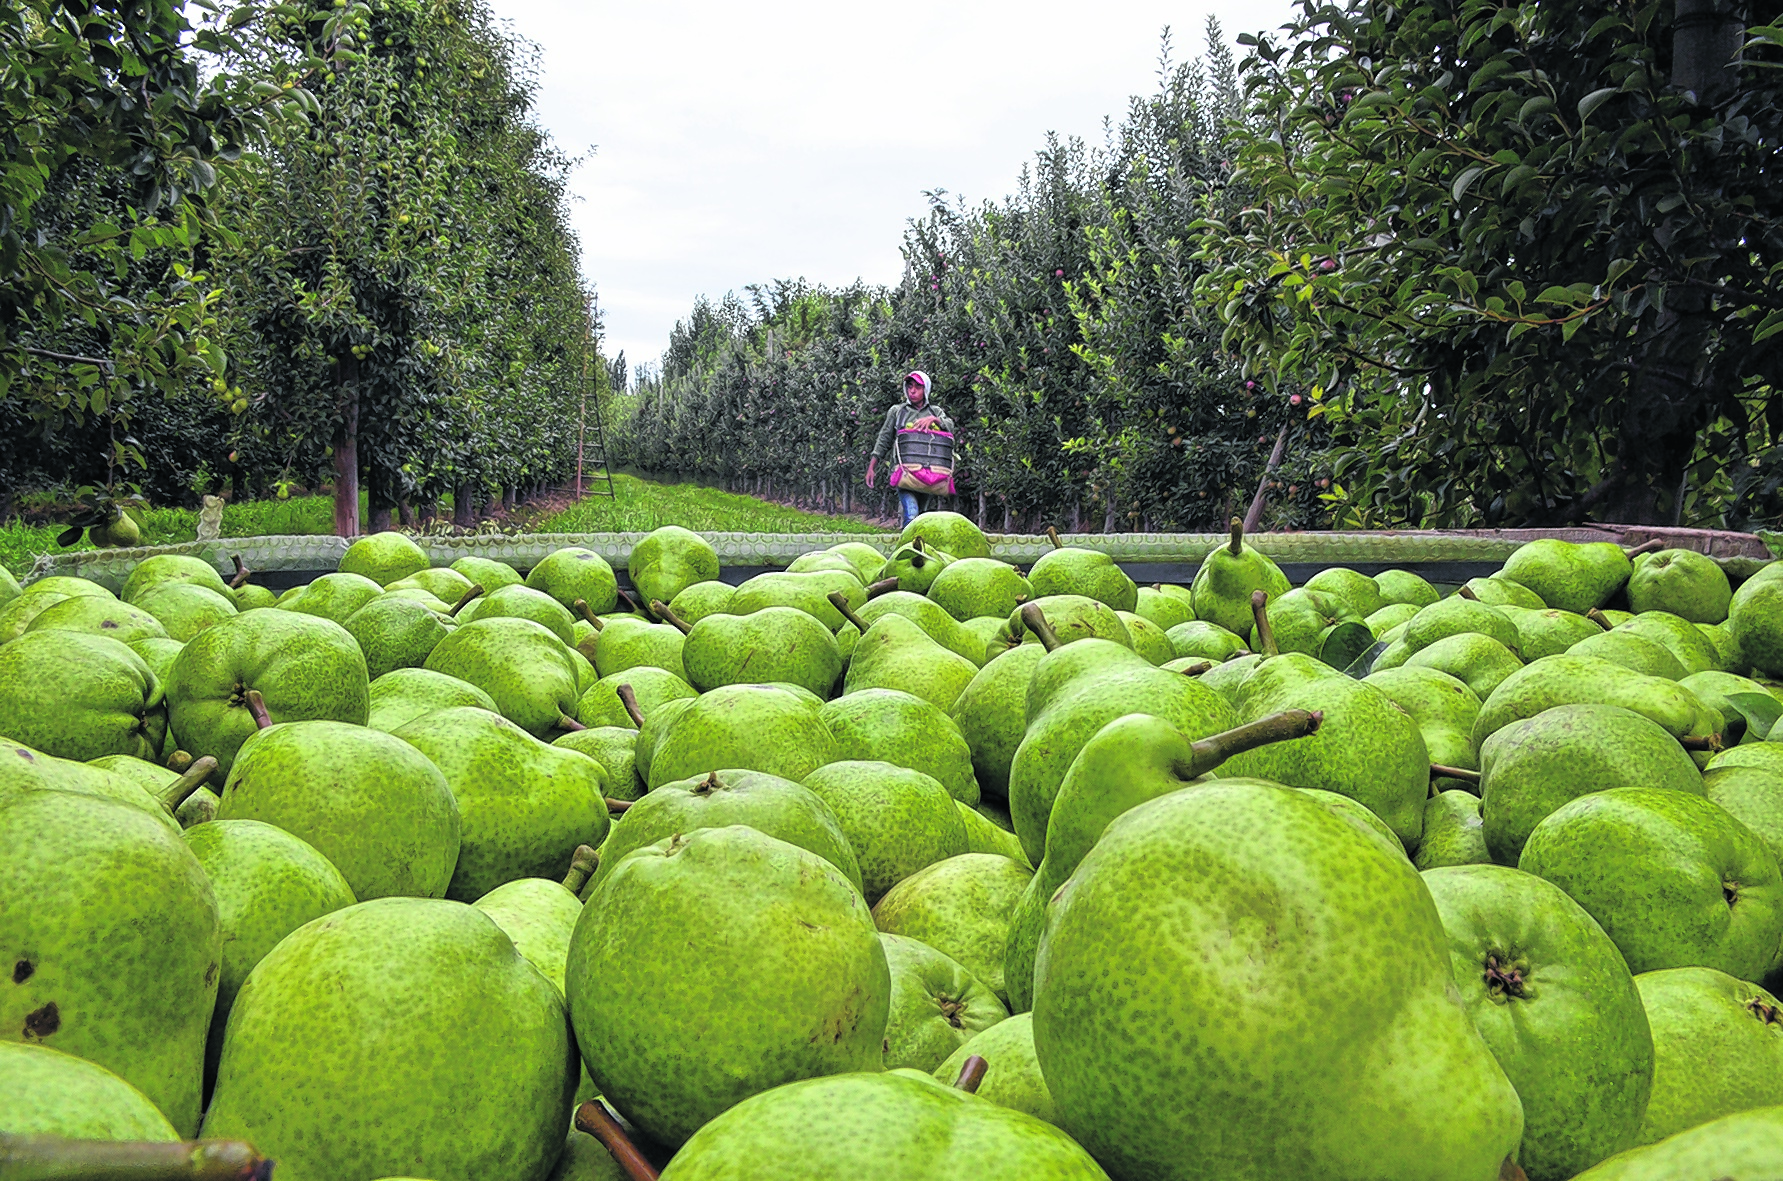 Dentro de las variedades de peras, William’s es la más importante de la región por volumen a comercializar. (Foto: Néstor Salas)